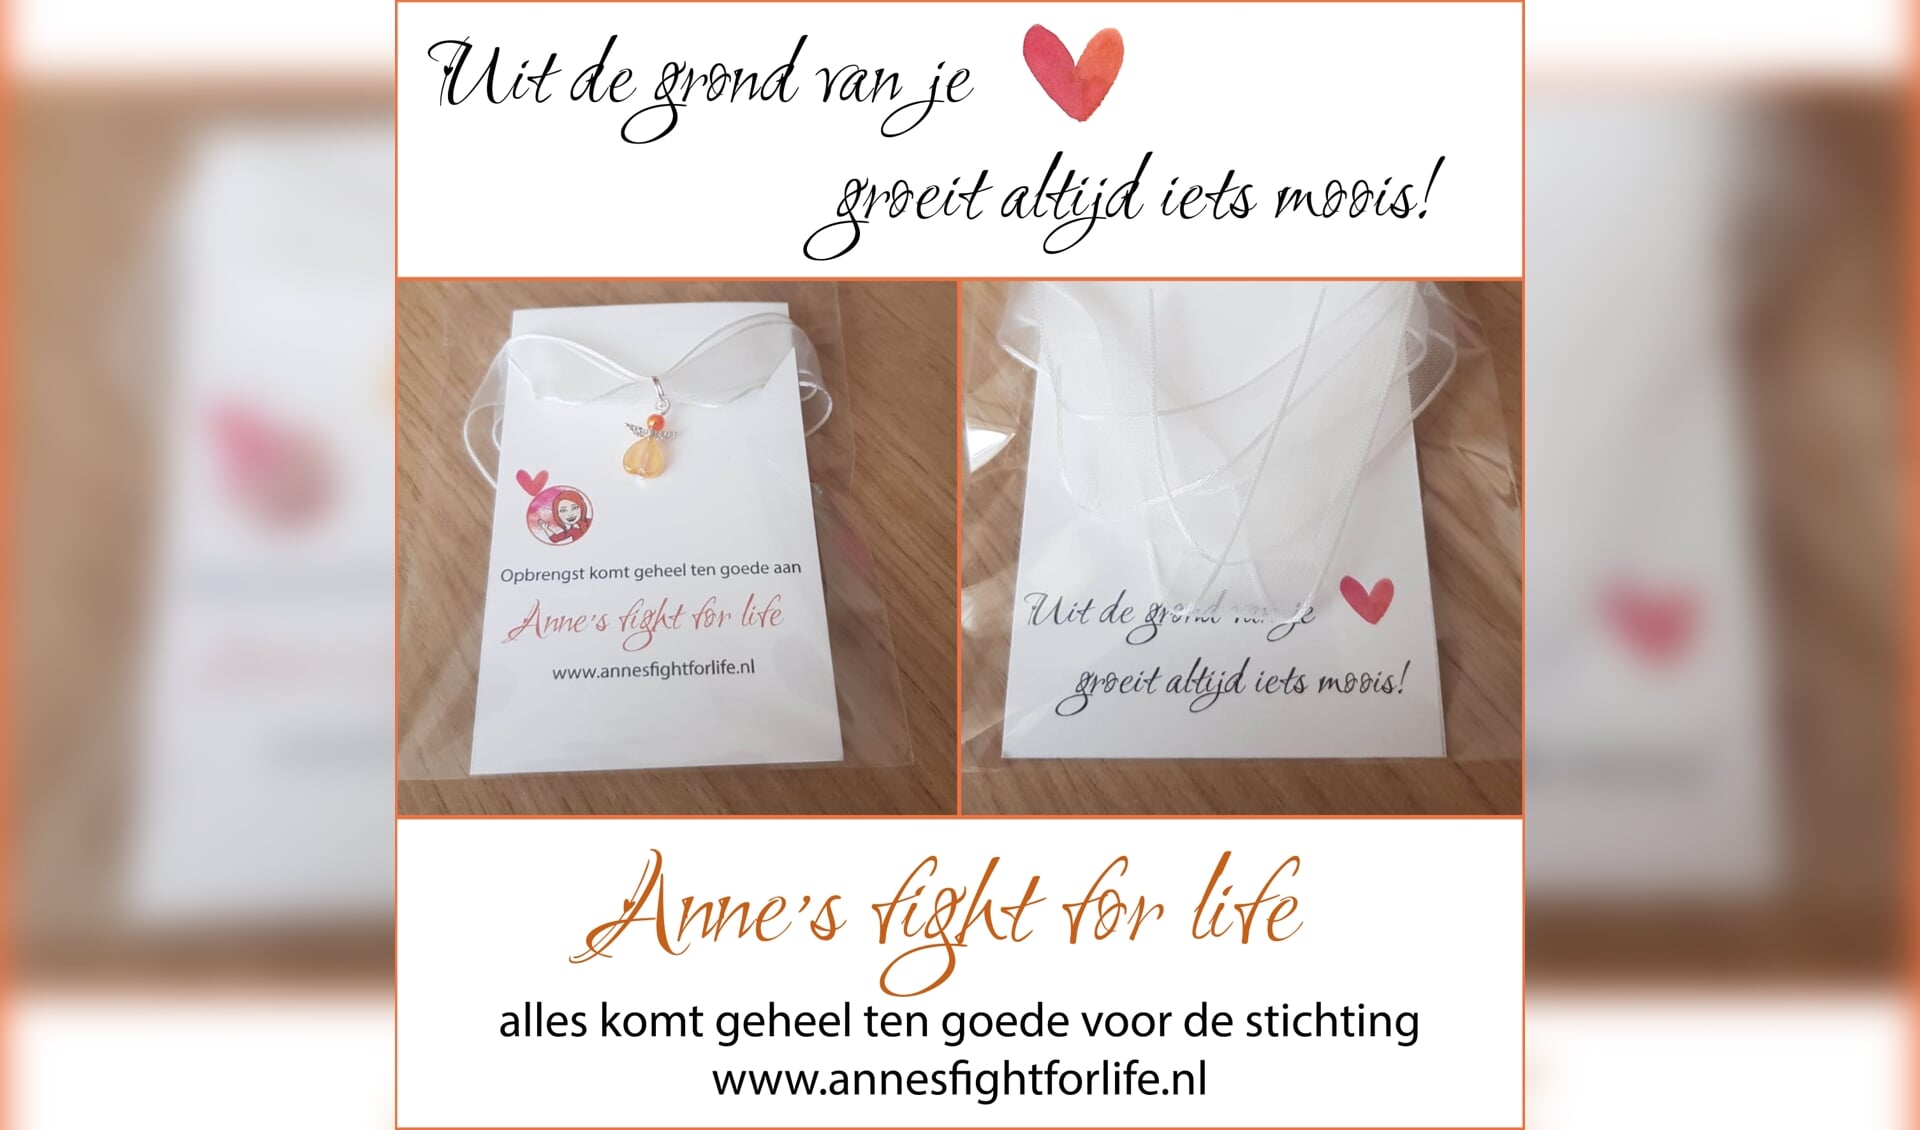 Marion Reefs uit Vierlingsbeek en Marianne van Boekholt van Mijn Melodie uit Boxmeer, gaan armbandjes verkopen om geld in te zamelen voor Anne